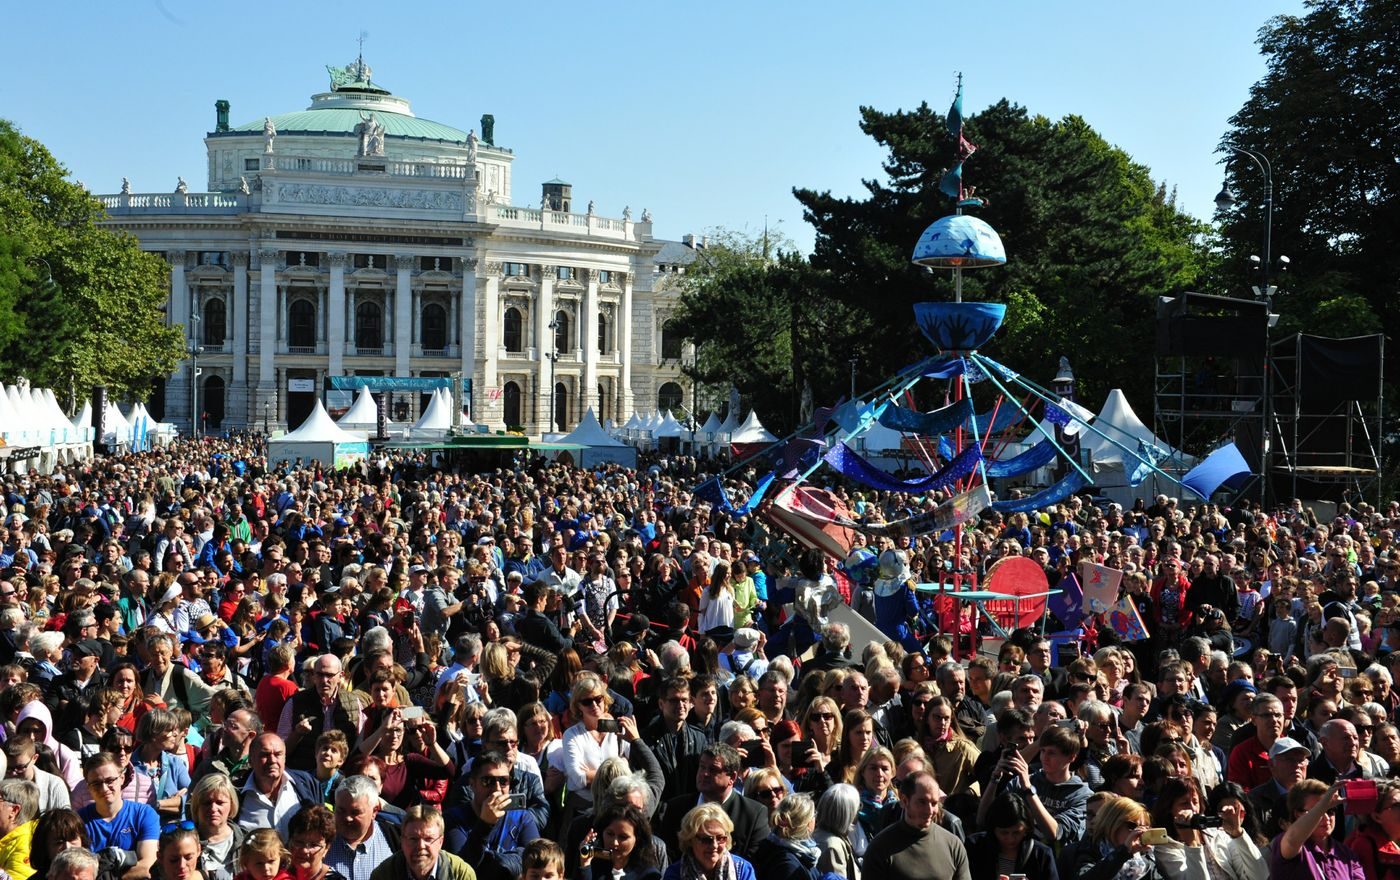 Tausende Menschen sind auf den Rathausplatz gekommen, um das Reformationsjubiläum zu feiern. Foto: epd/Uschmann